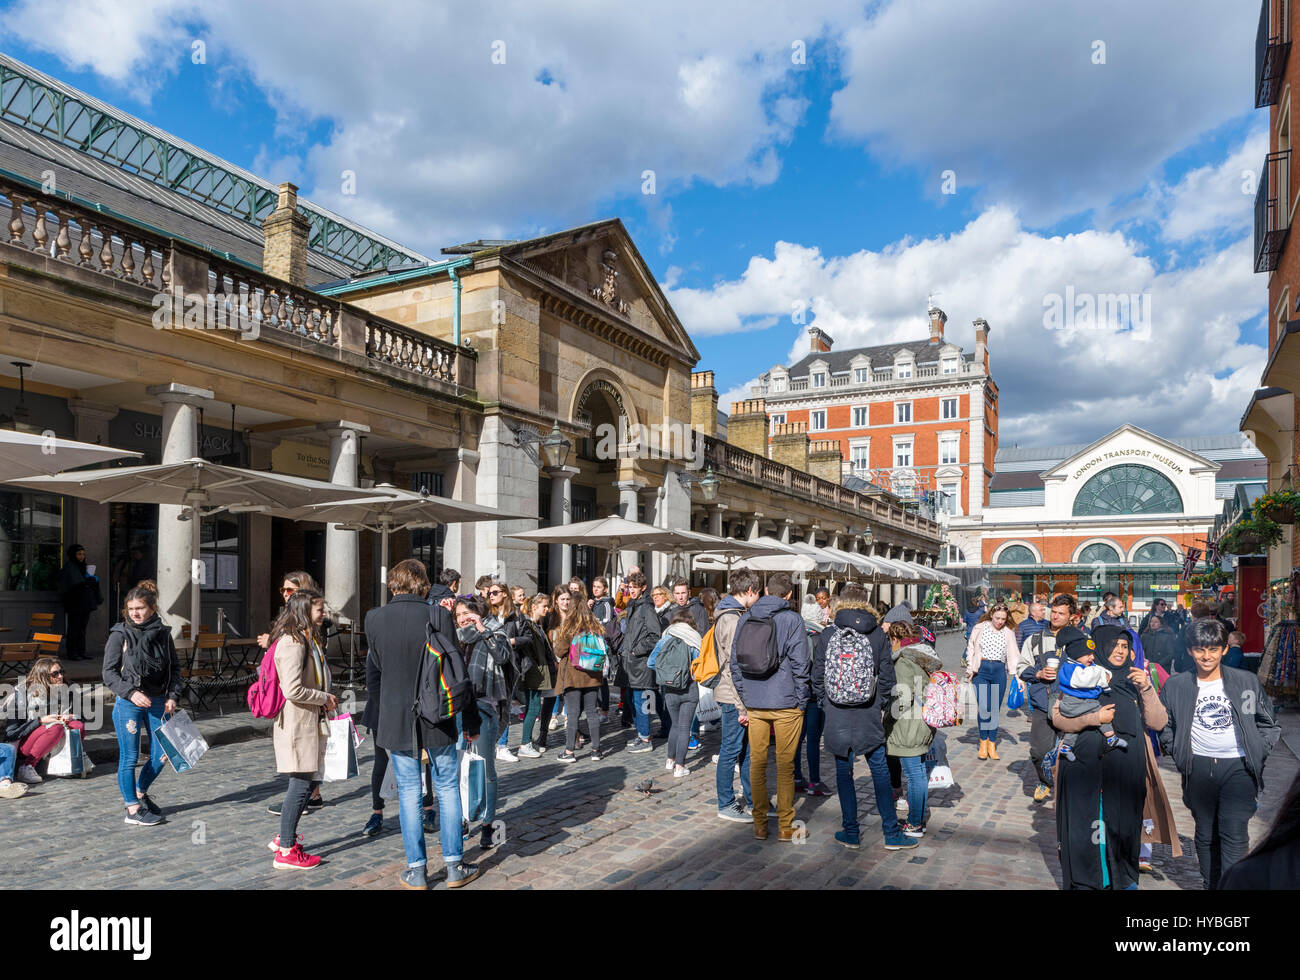 Covent Garden, Londres. Des foules de touristes à l'extérieur du marché de Covent Garden, West End, Londres, Angleterre, Royaume-Uni Banque D'Images